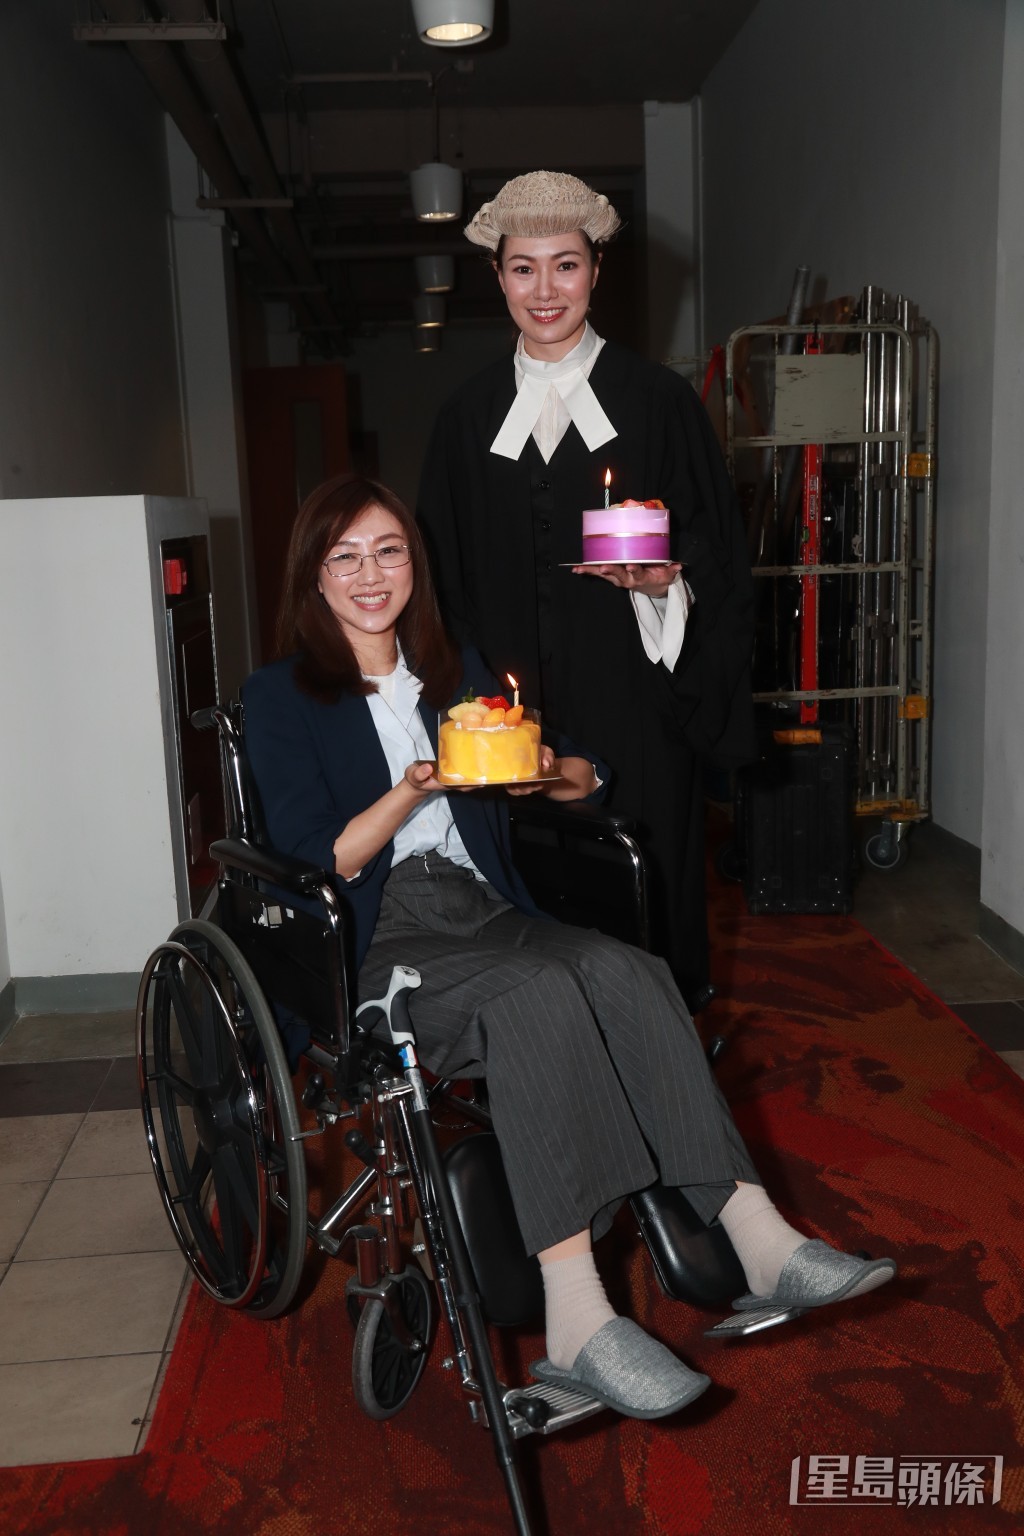 27日生日的颜卓灵与今日（31日）生日的菁玮就获剧组送上生日蛋糕庆祝。